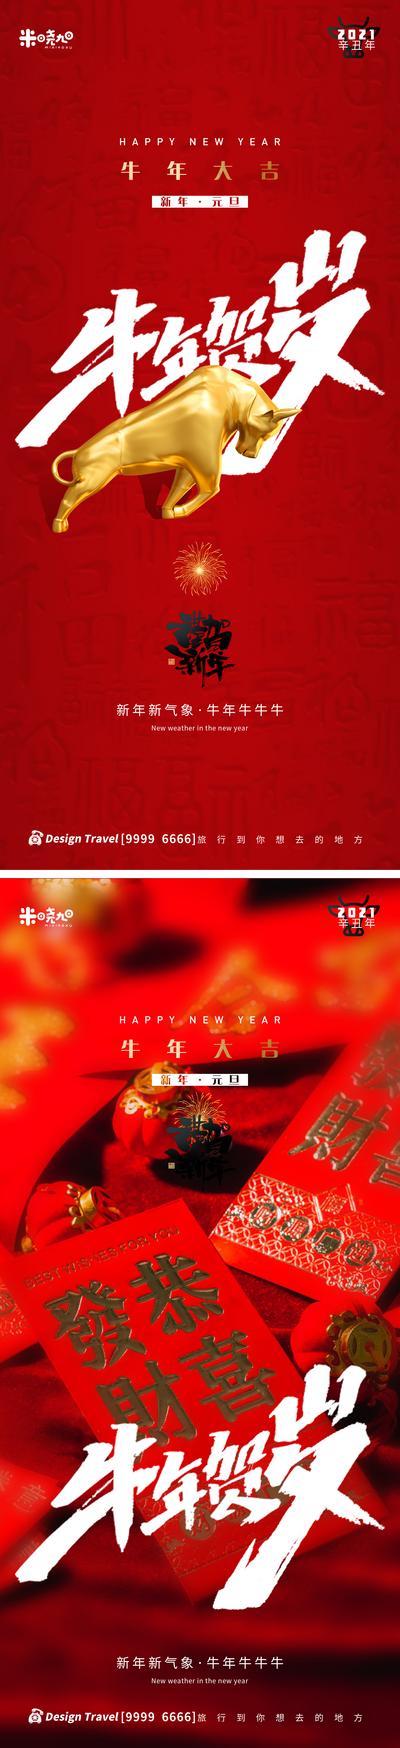 南门网 广告 海报 节日 牛年 红色 金牛 送福 新年 大吉大利